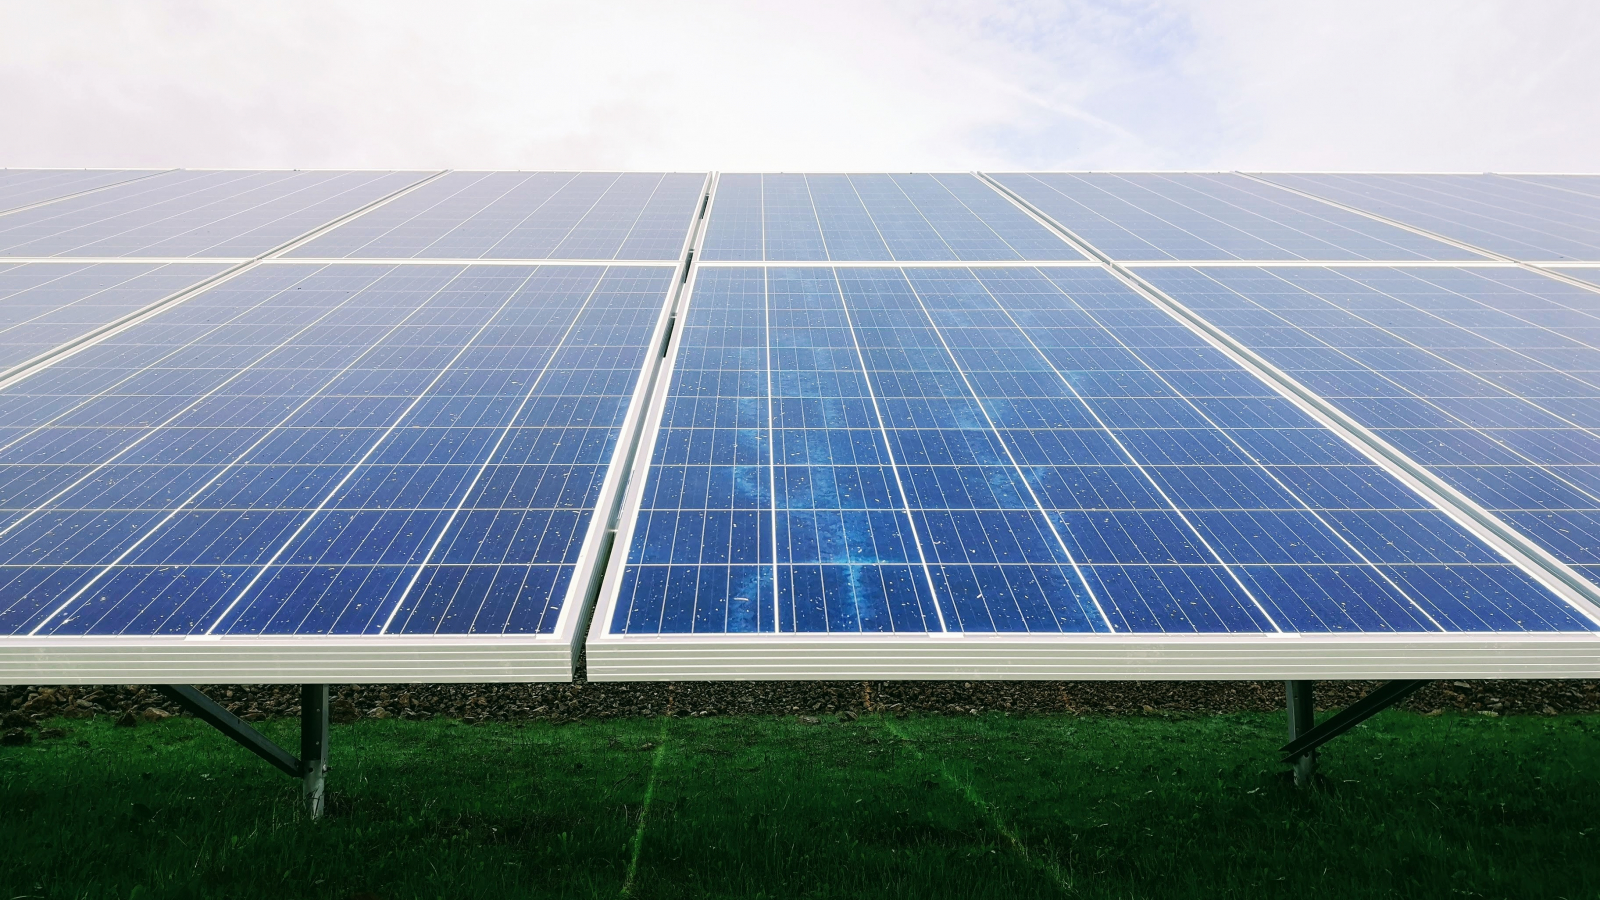 Ukraine: New solar farm built in Plyskiv village 